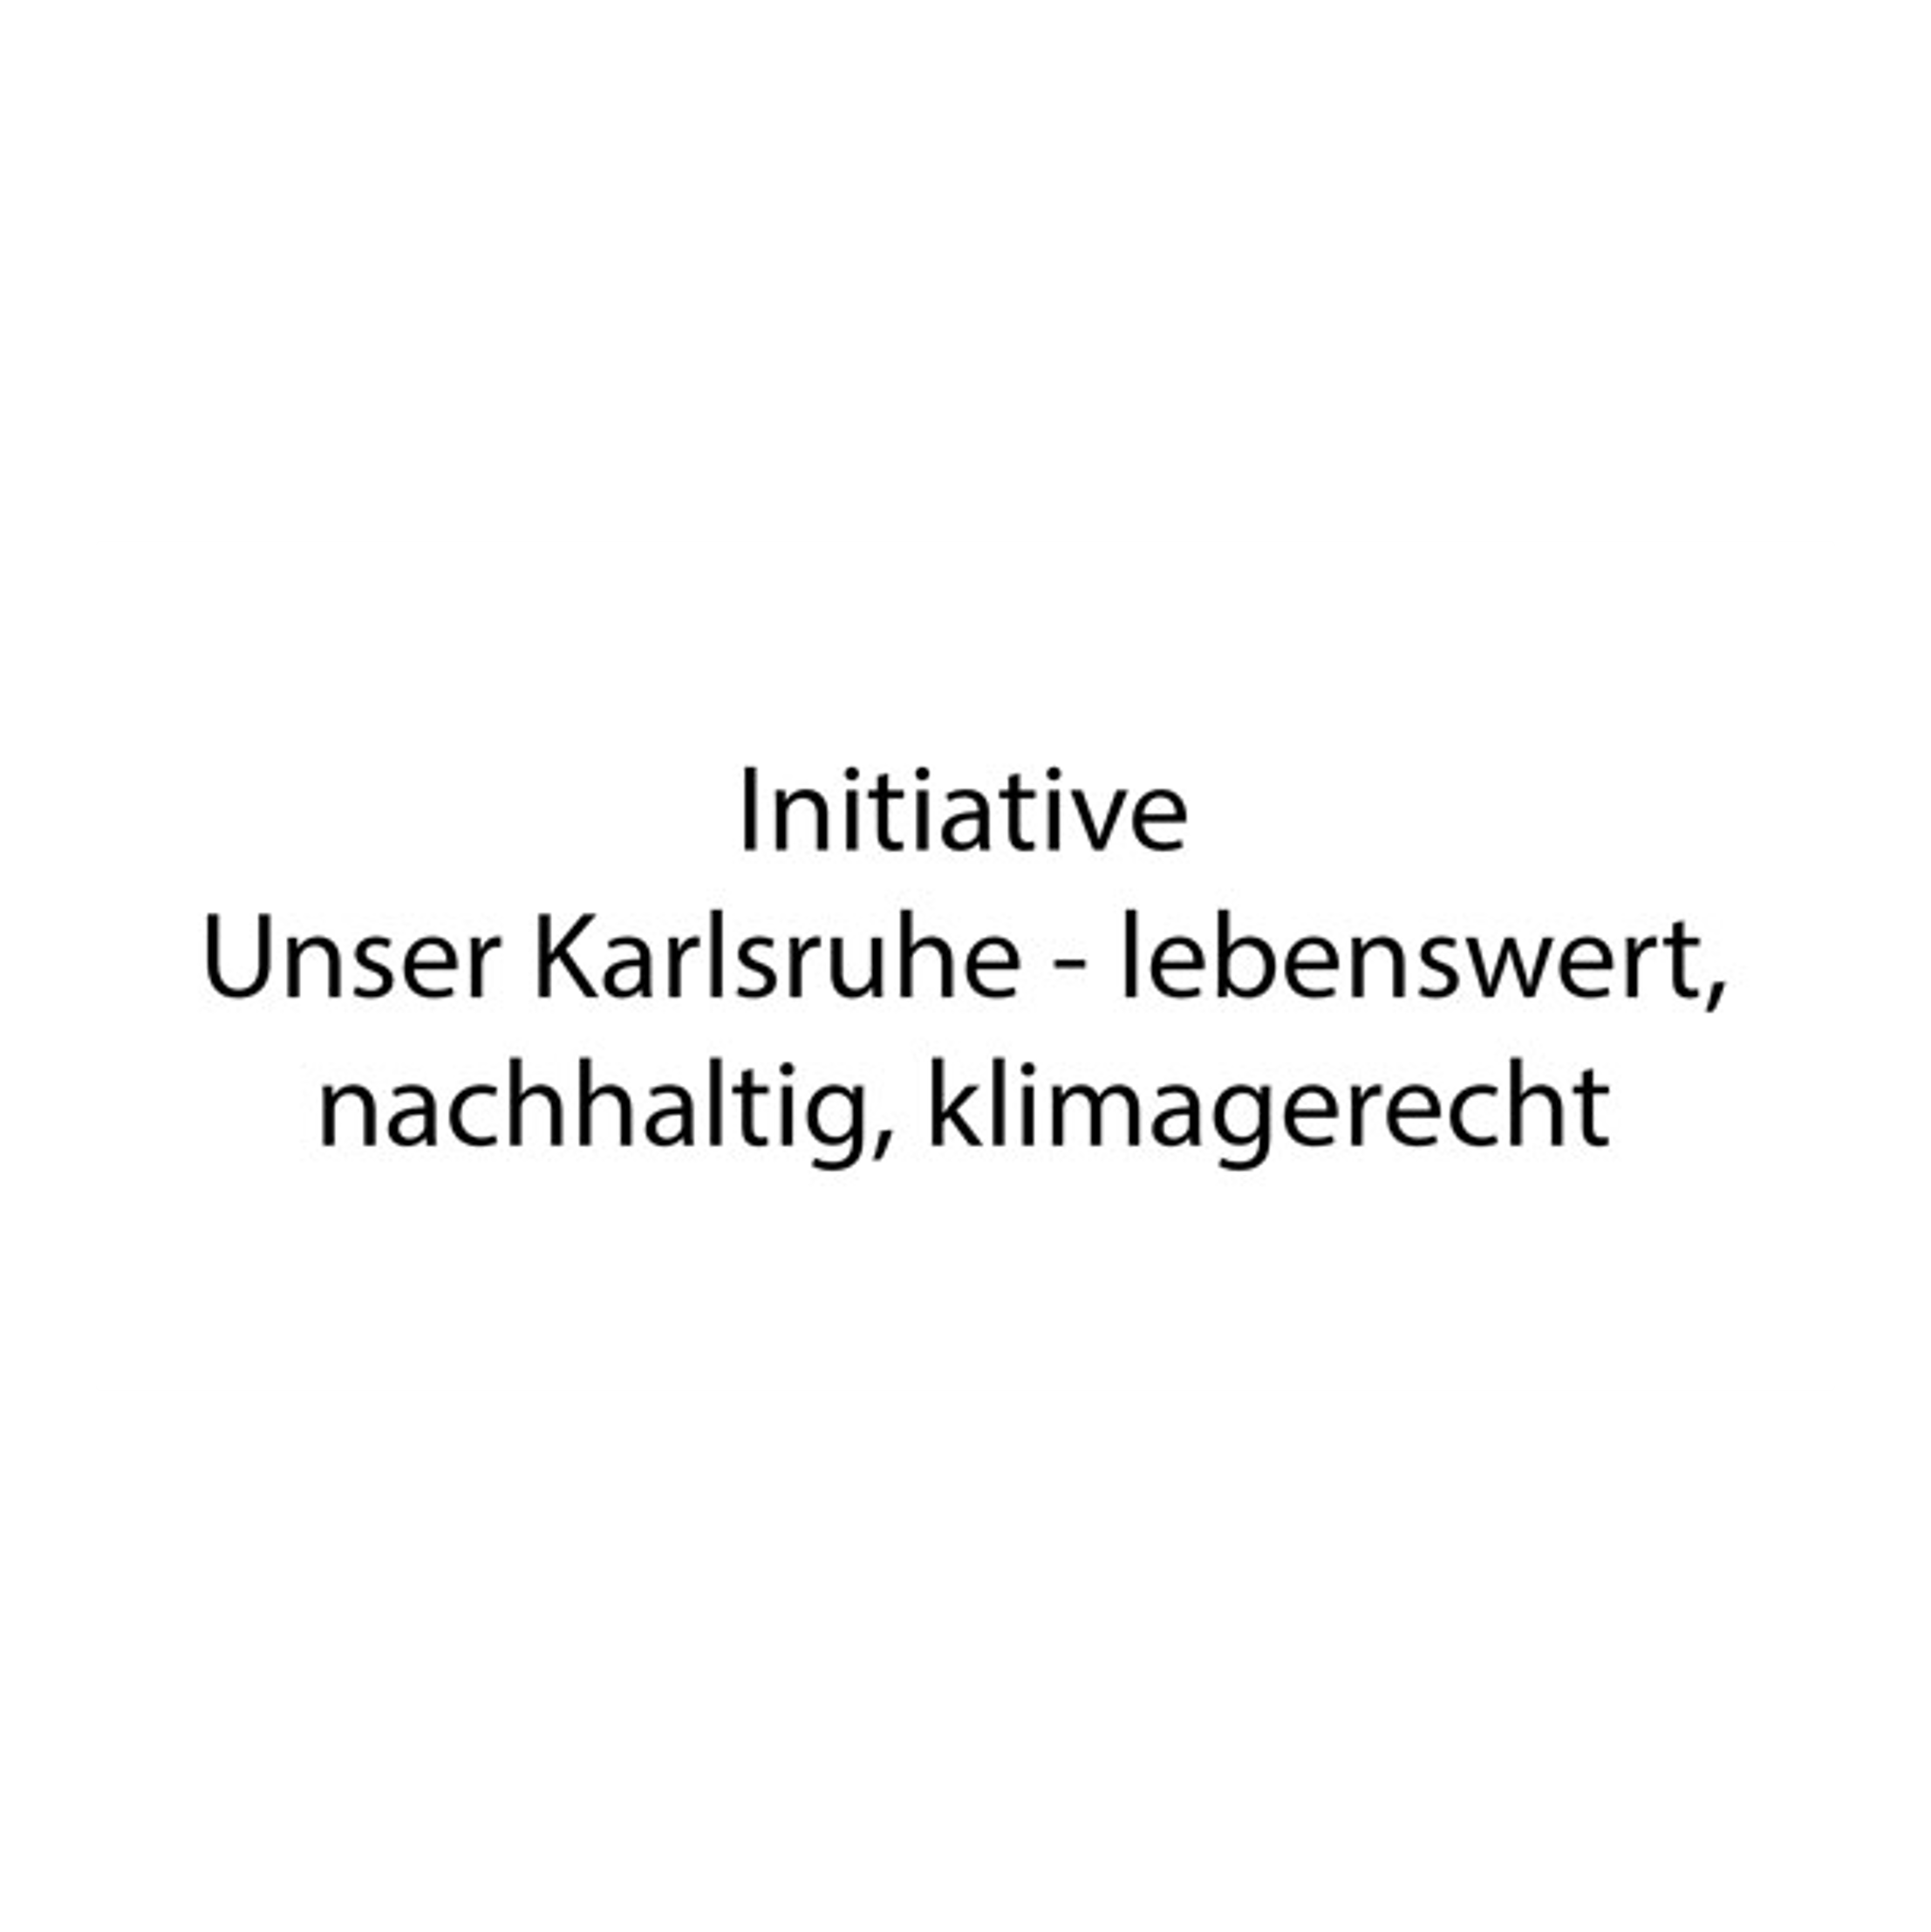 Initiative - Unser Karlsruhe lebenswert, nachhaltig, klimagerecht